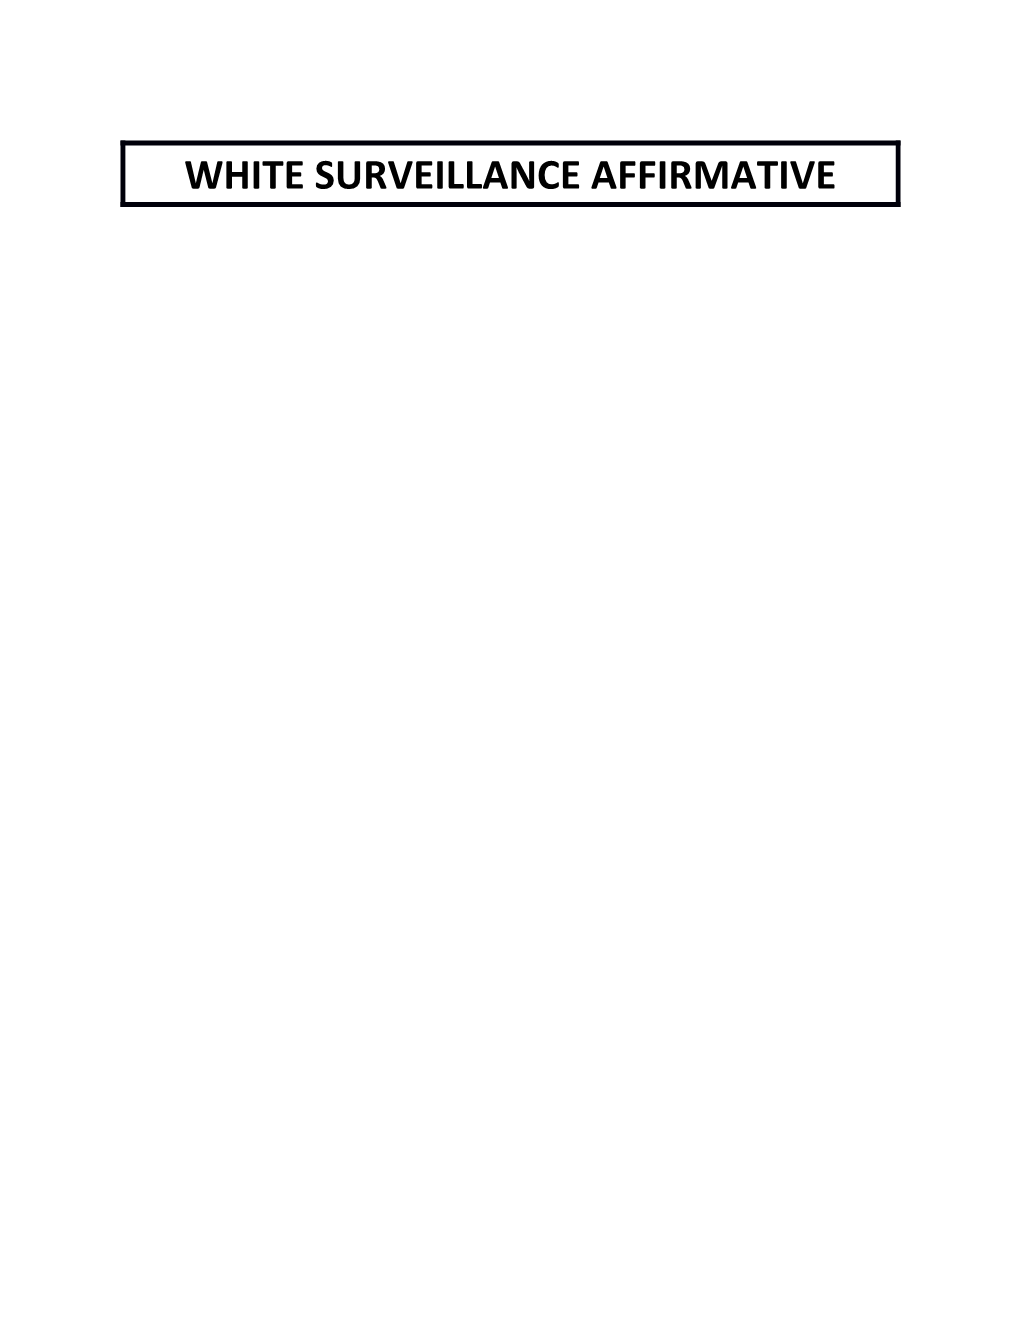 White Surveillance Affirmative